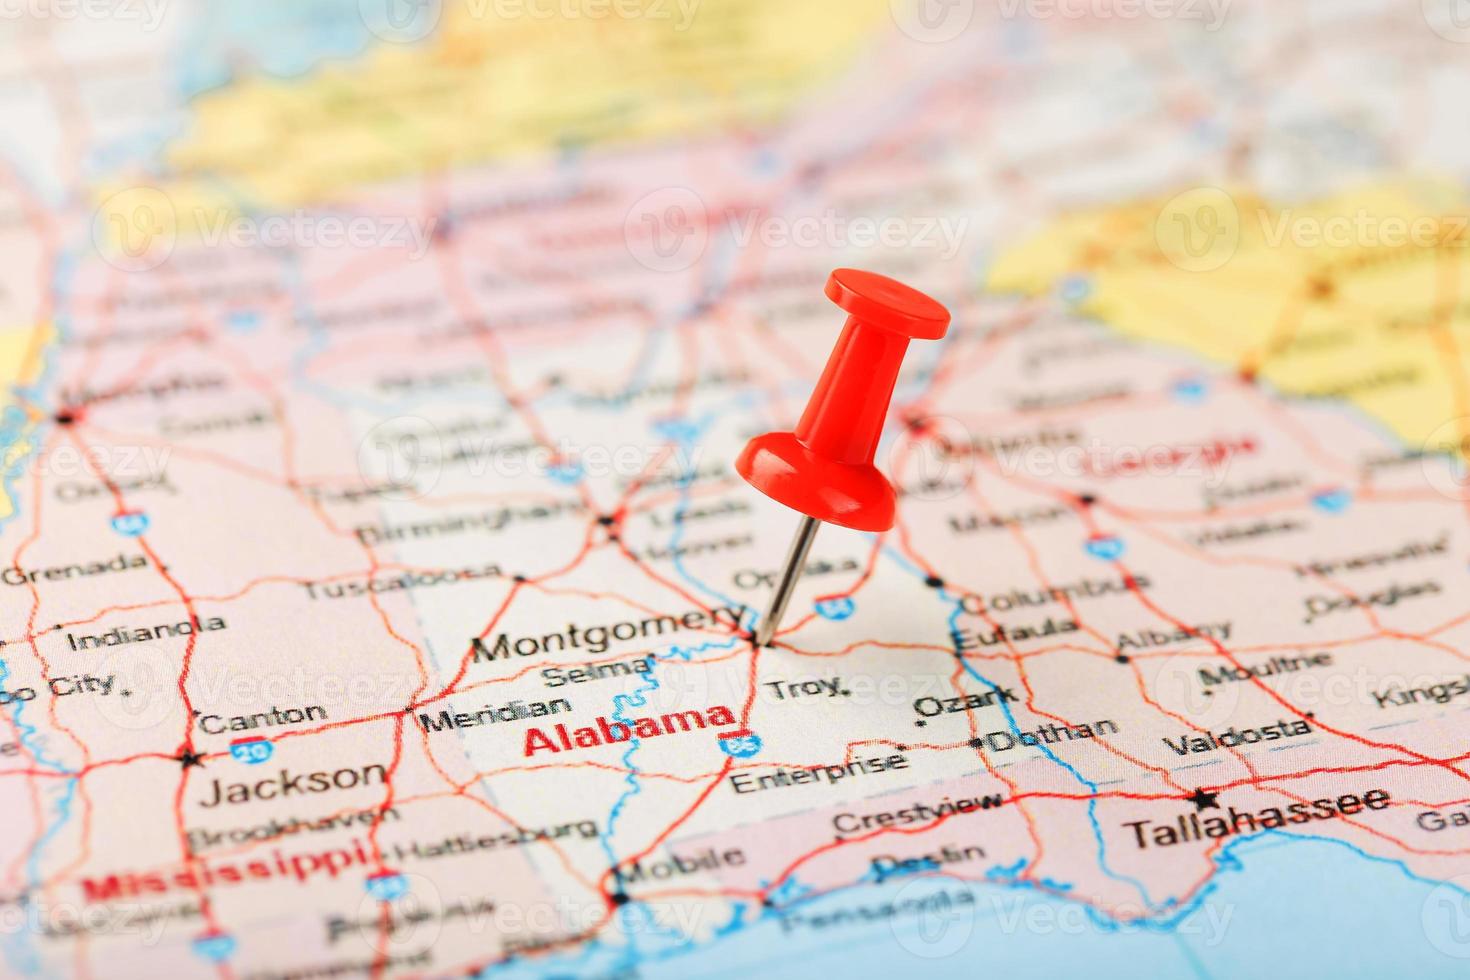 aguja clerical roja en un mapa de estados unidos, alabama del sur y la capital montgomery. cerrar mapa del sur de alabama con tachuela roja foto